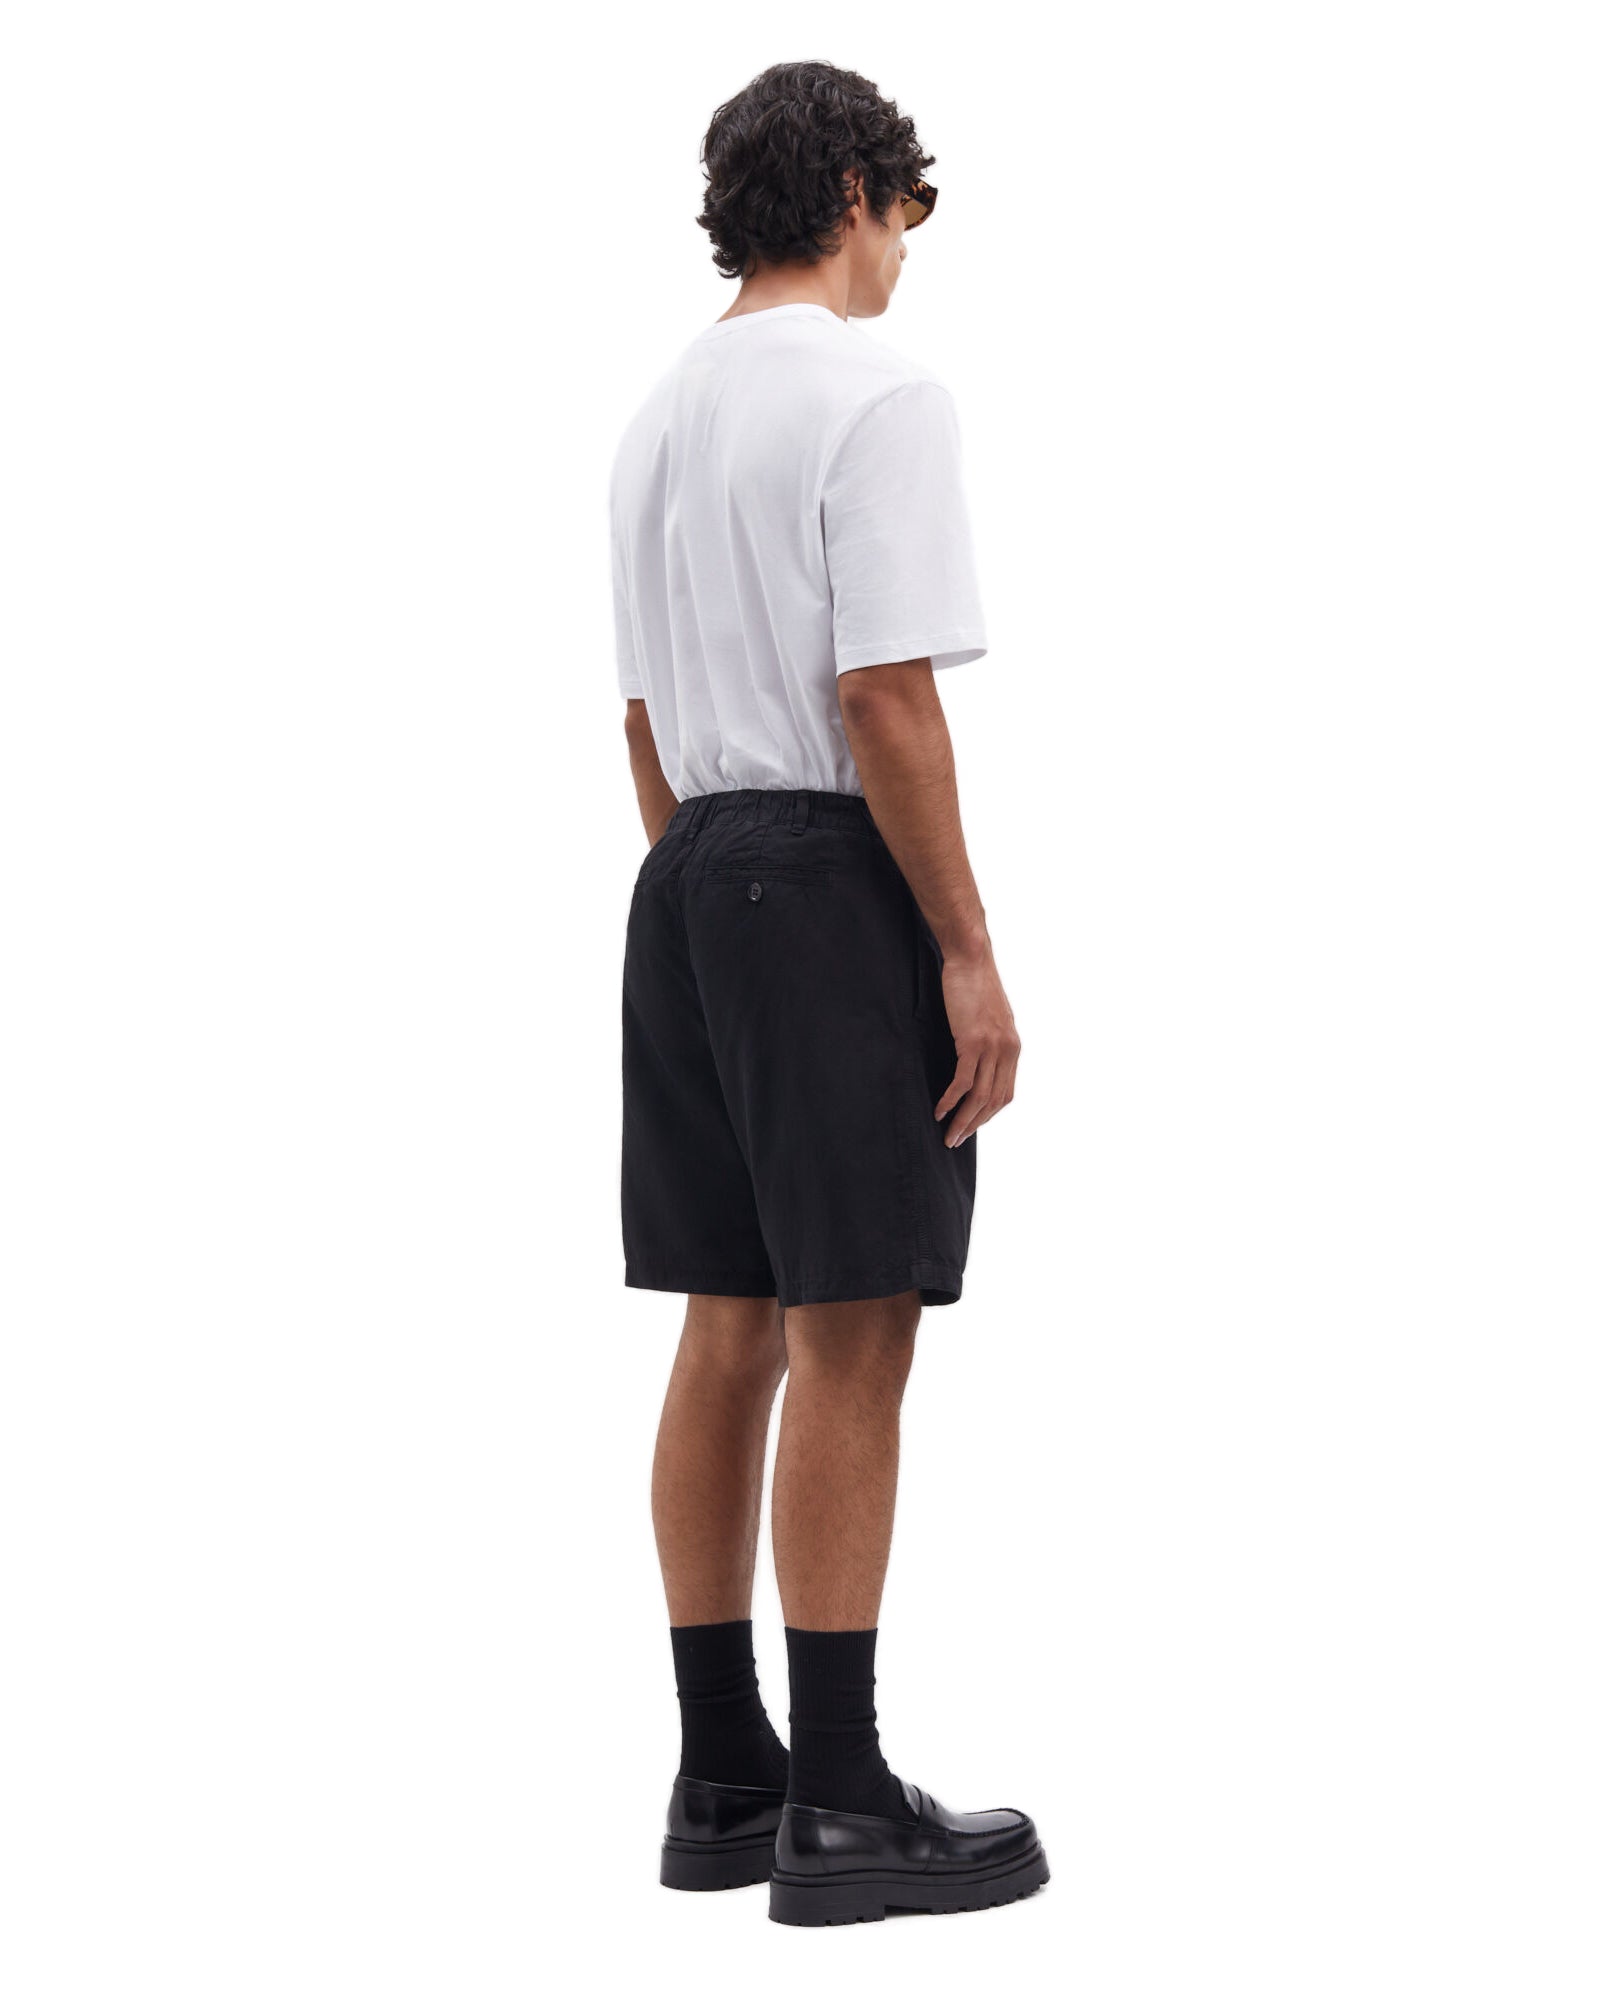 Pantalón Short Sahammel 15241 - Negro